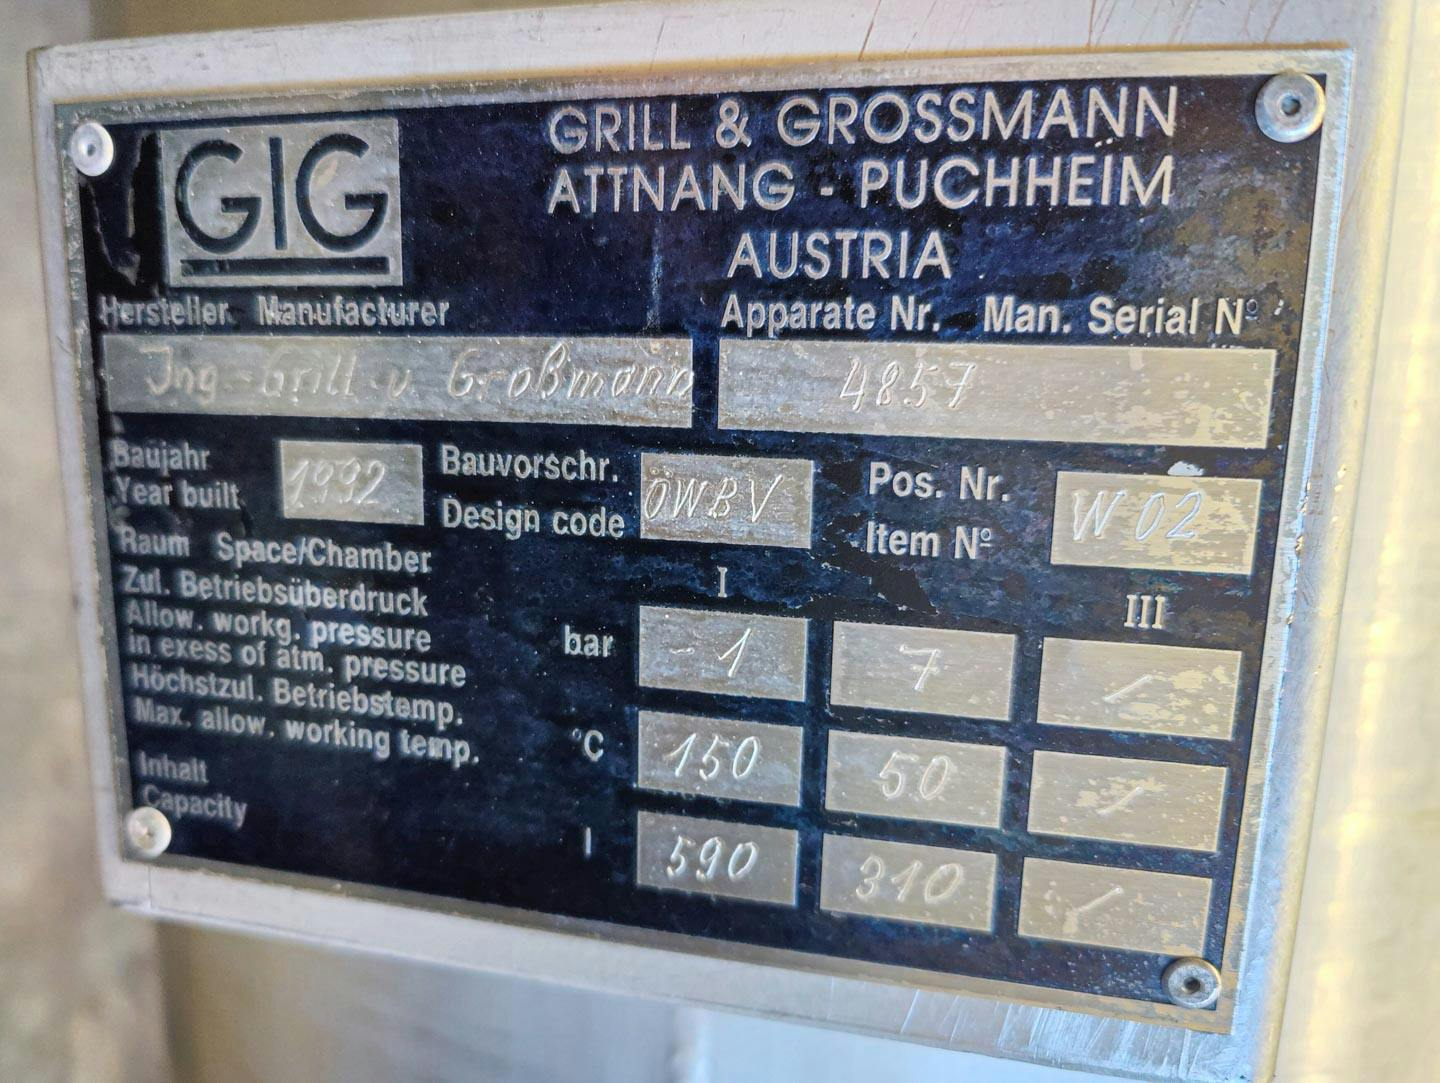 Grill & Grossmann 4m² - Wyparka z filmem cieczy - image 14